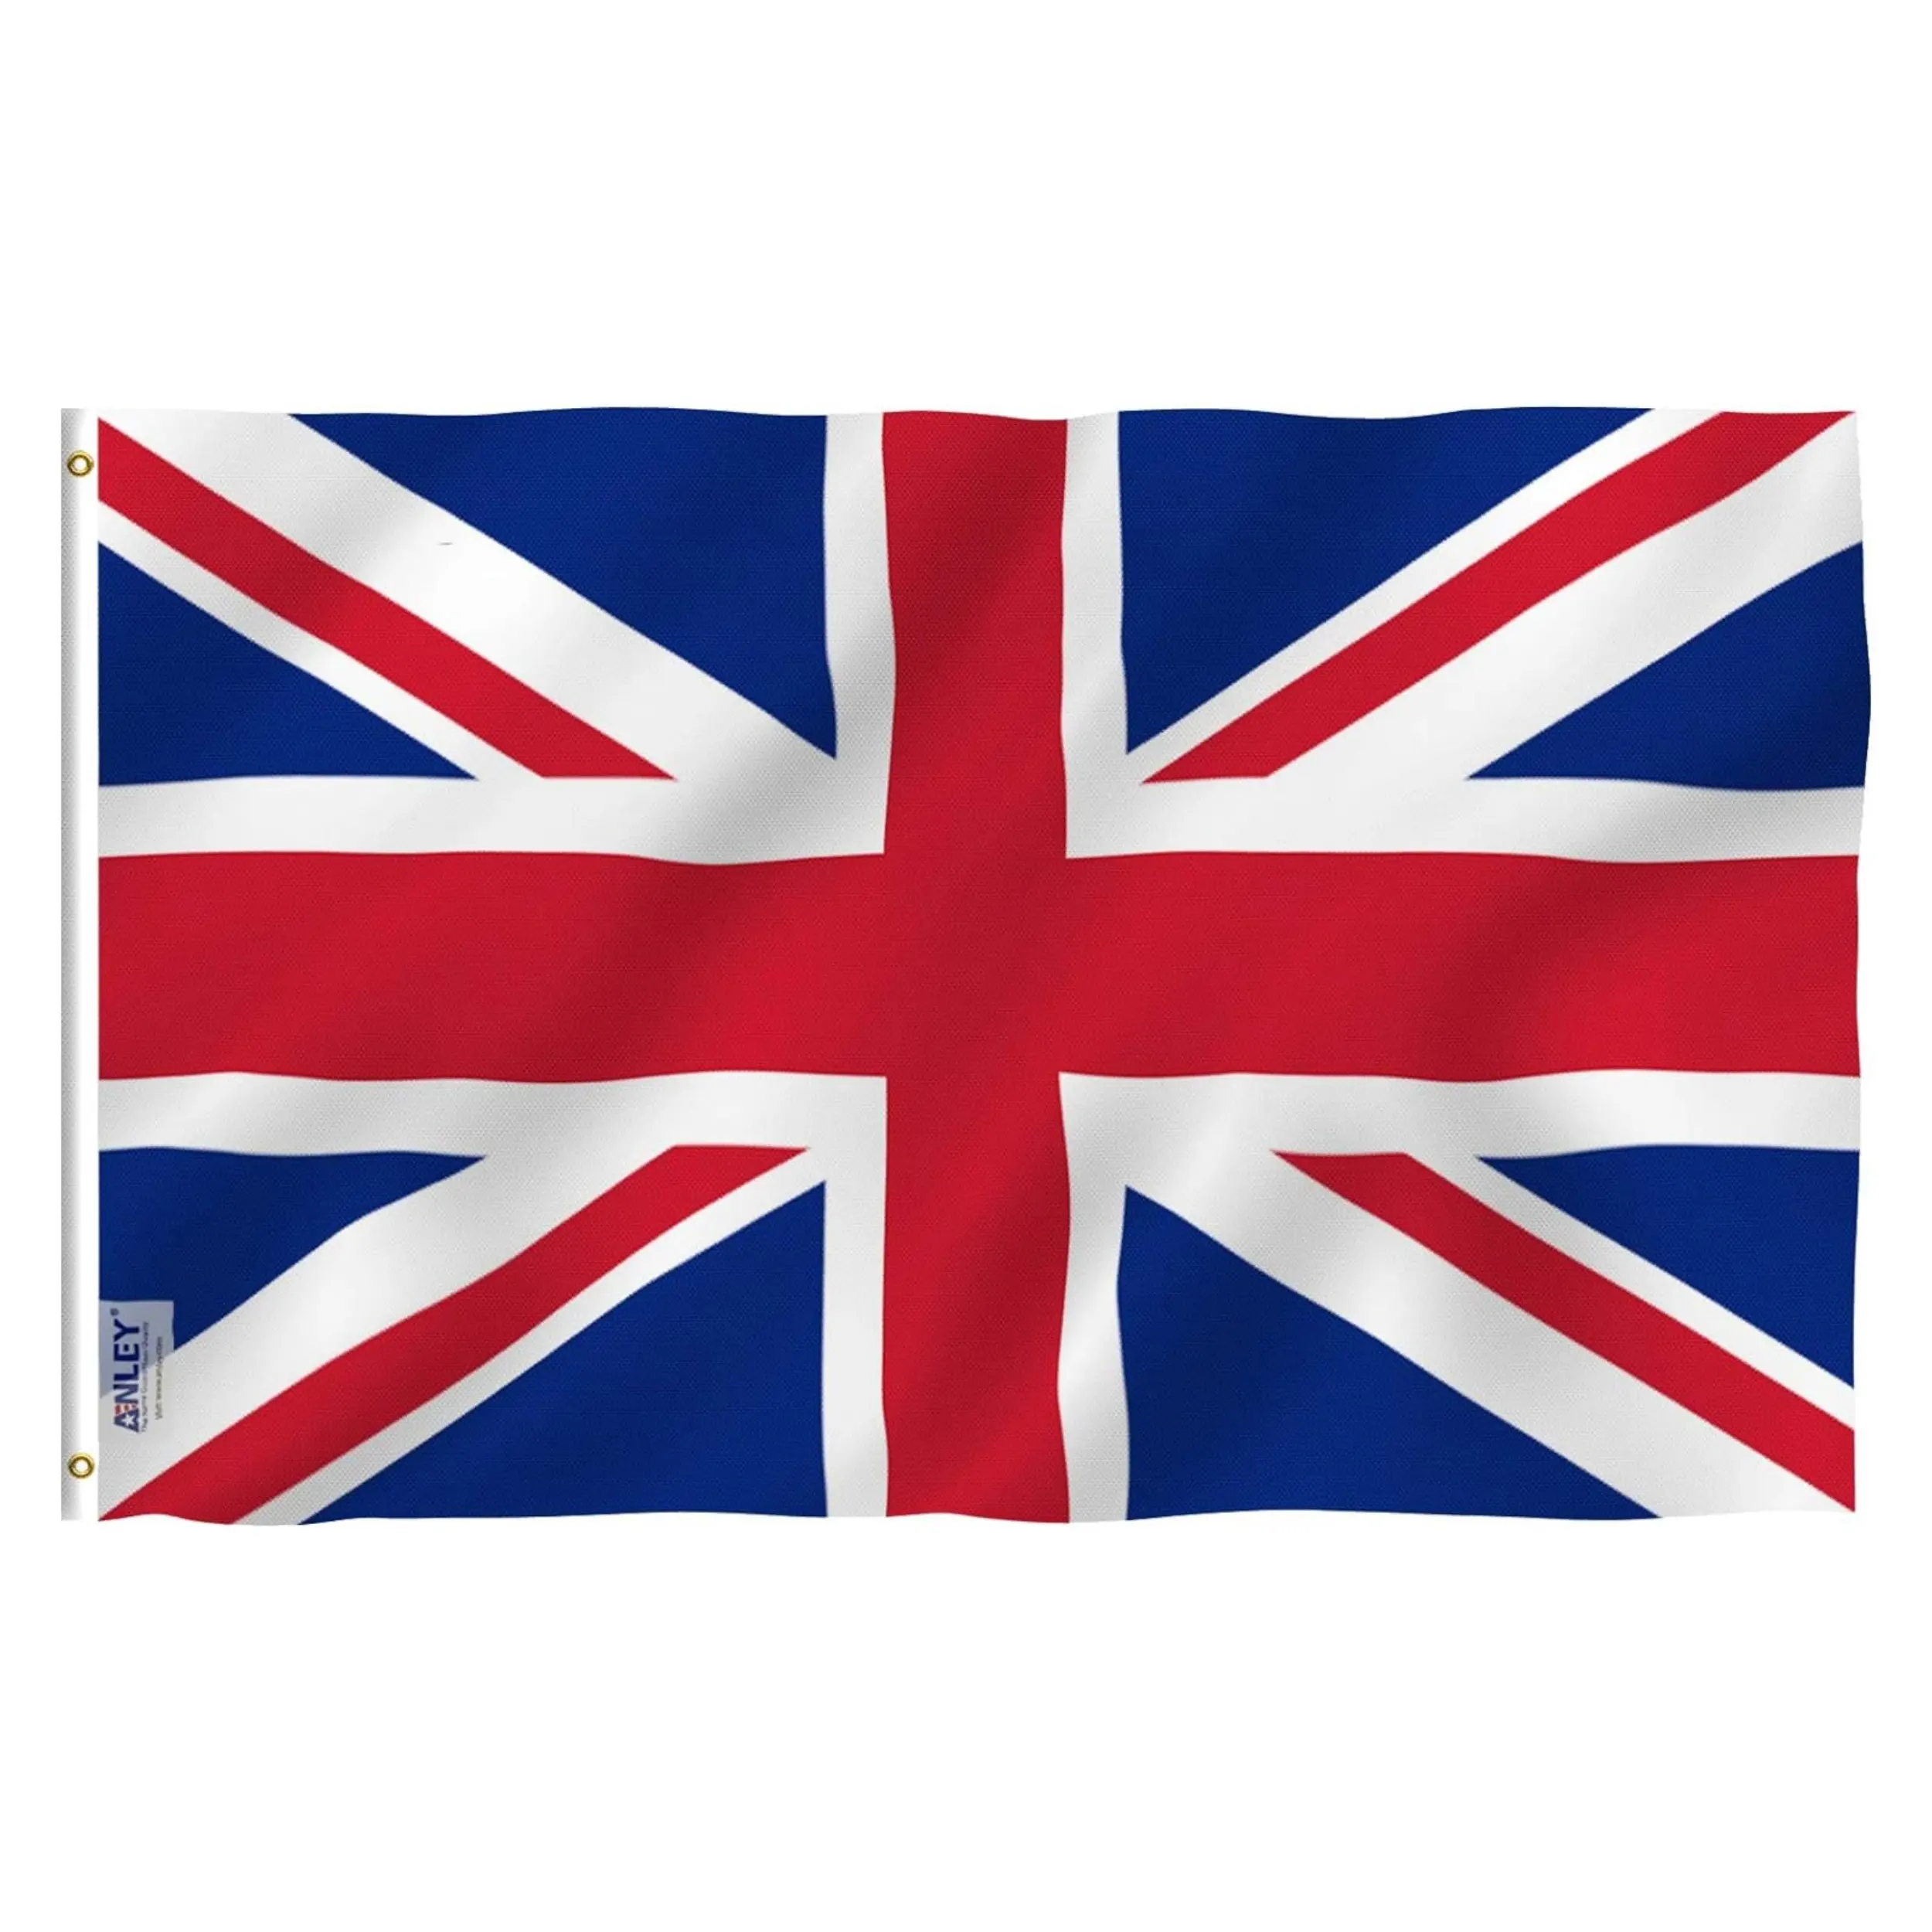 ขายส่ง 3x5 ฟุตโพลีเอสเตอร์สหราชอาณาจักรอังกฤษธงชาติอังกฤษทุกประเทศอังกฤษสหราชอาณาจักรธงอังกฤษ 3x5FT ยูเนี่ยนแจ็คธง